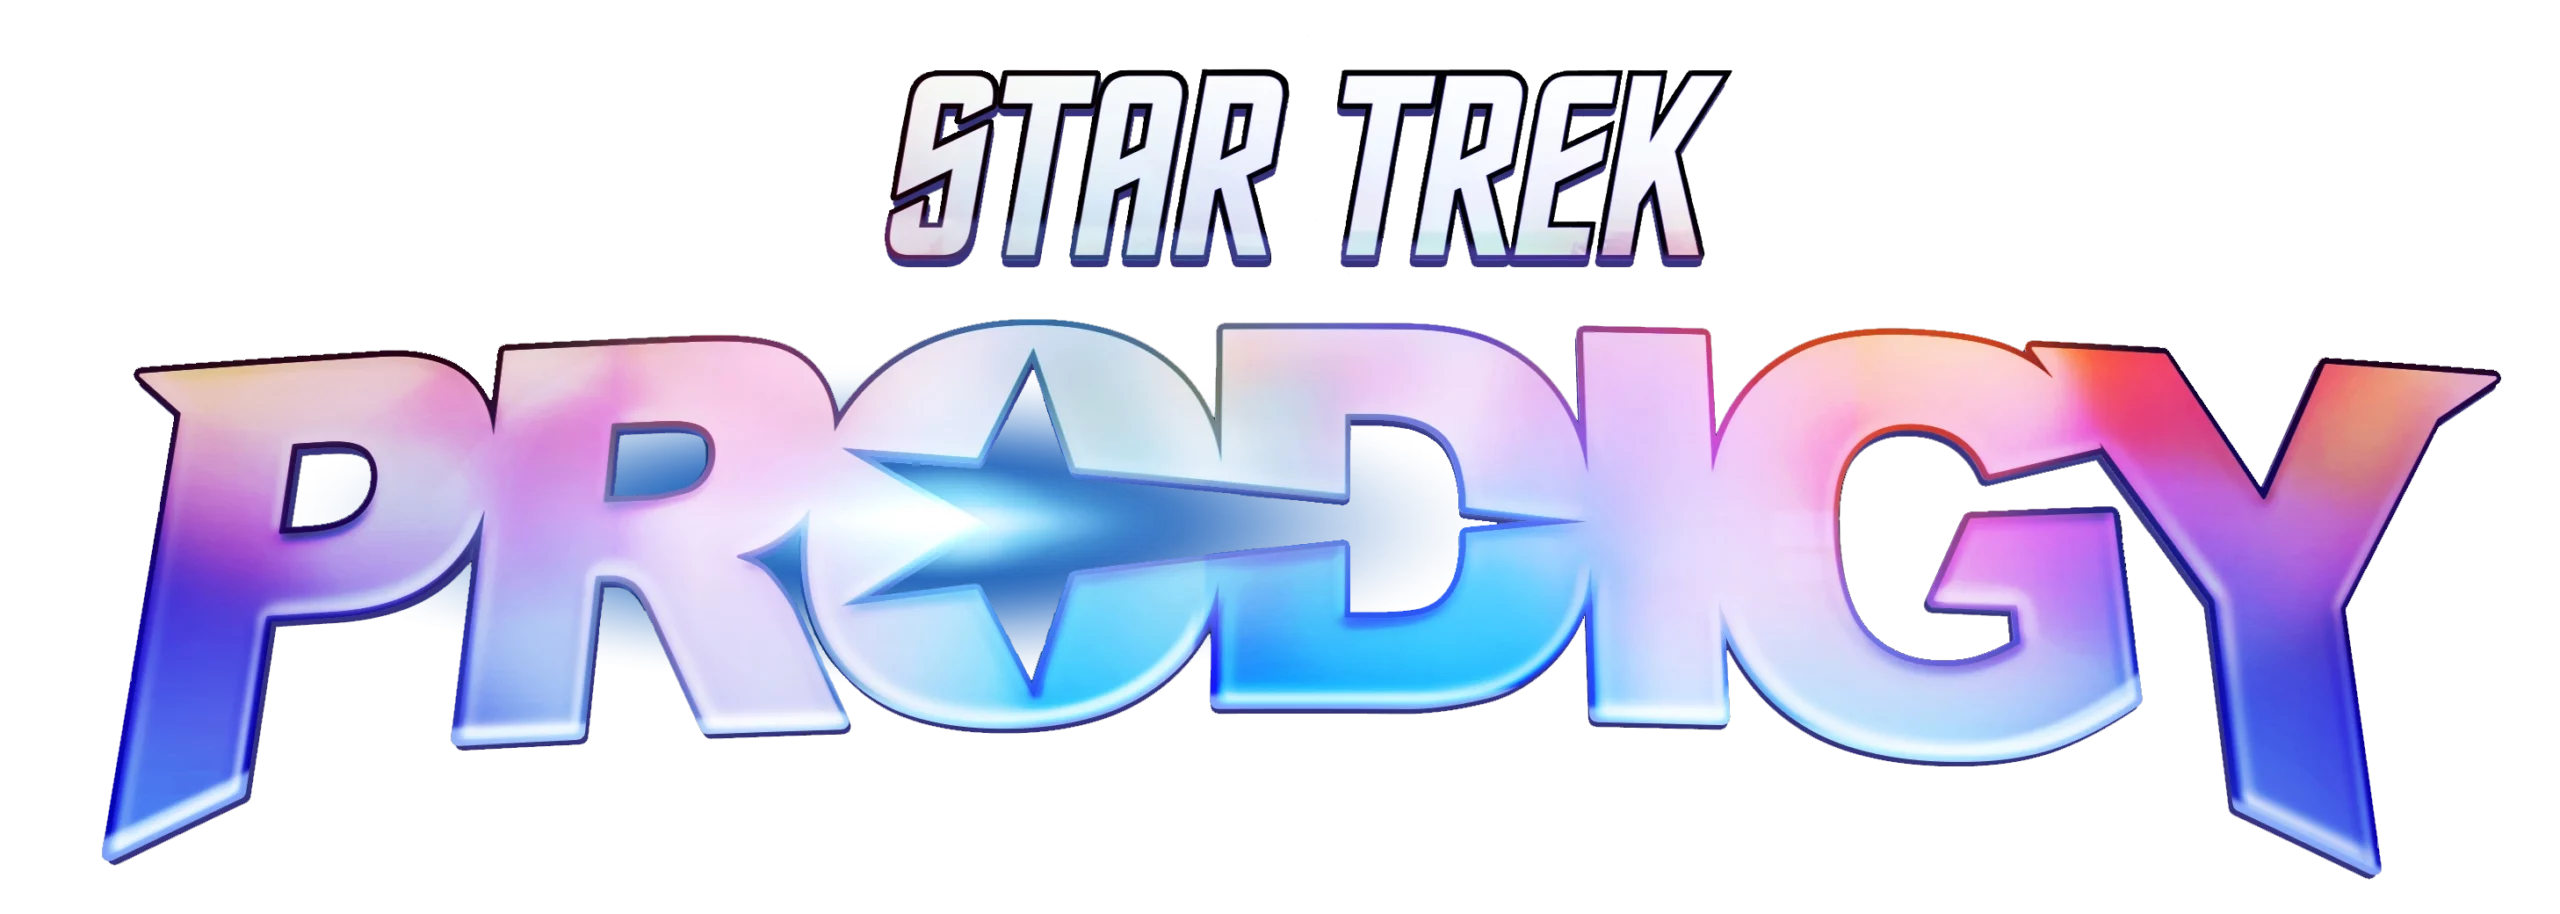 Star Trek Prodigy logo